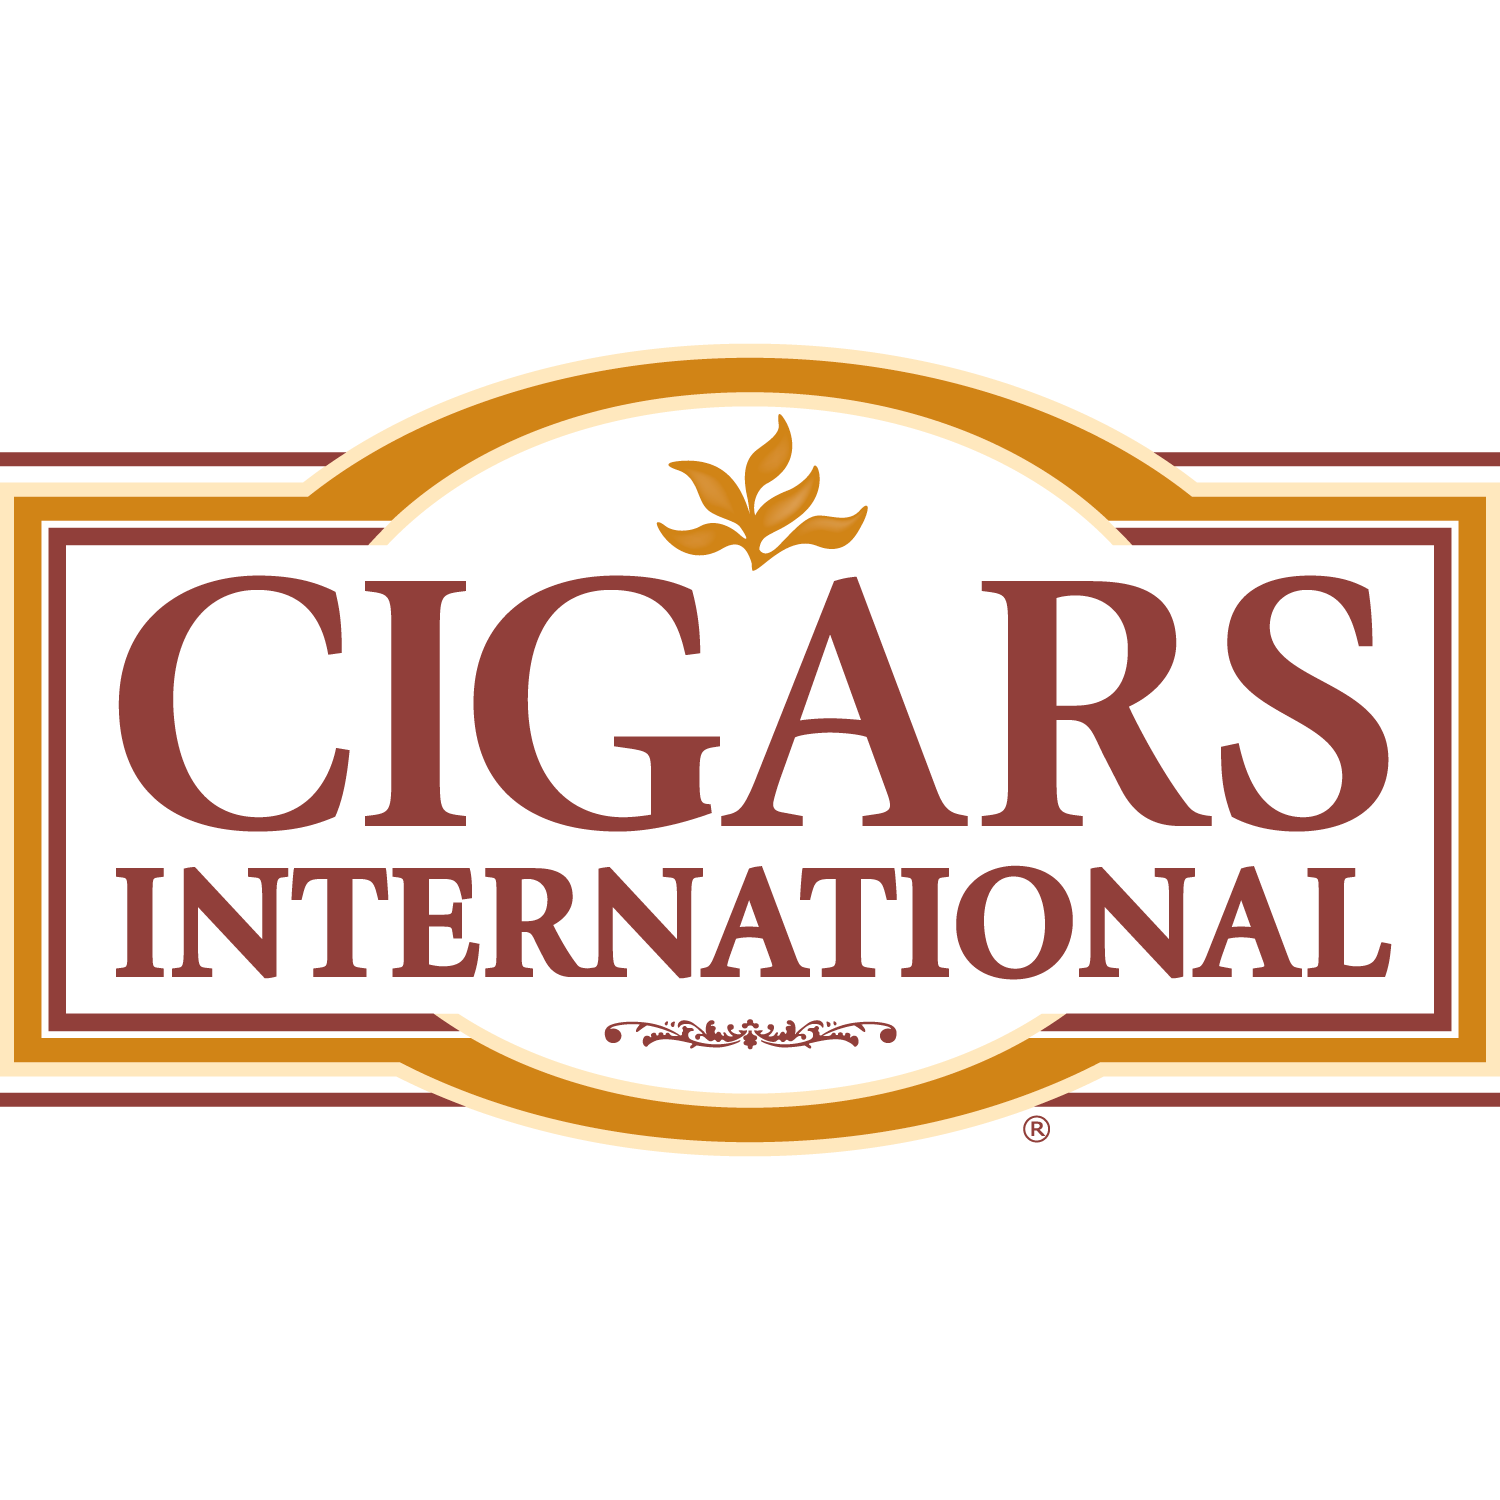 fb_cigars_international